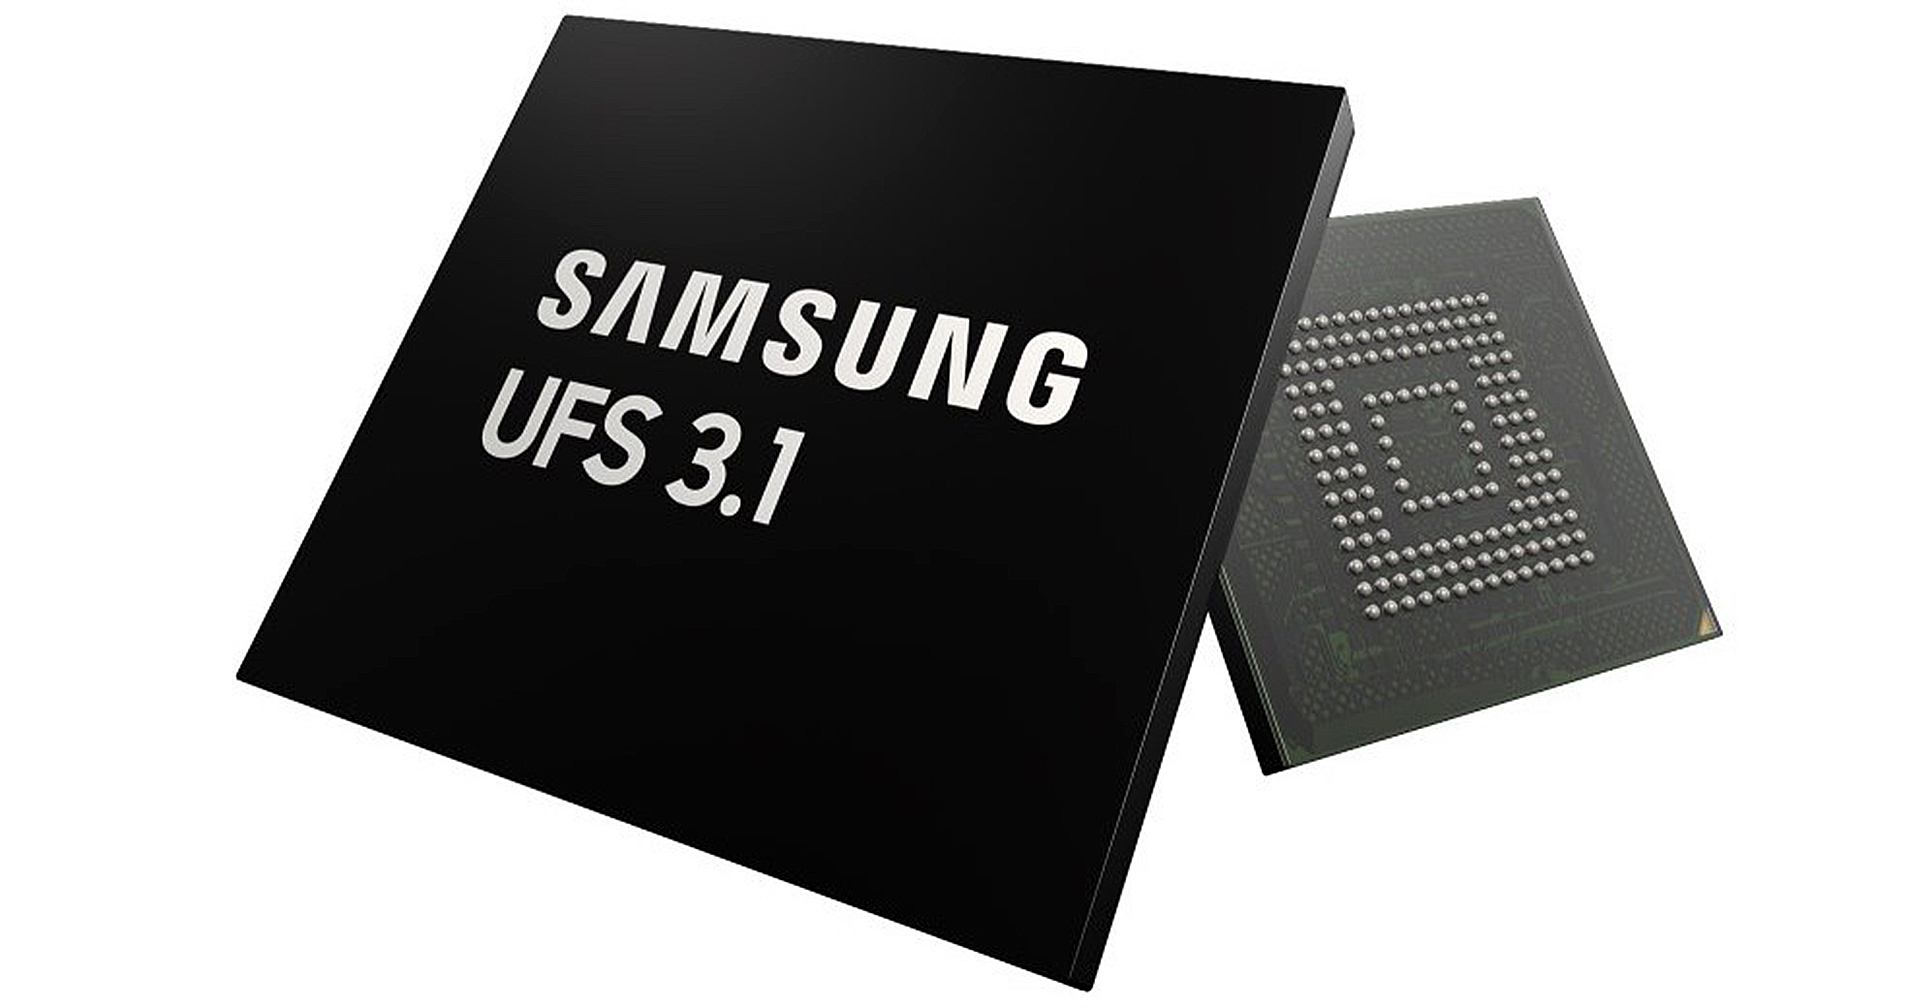 Samsung เปิดตัวสตอเรจ UFS 3.1 สำหรับรถยนต์: ความเร็วสูงขึ้น, ใช้พลังงานน้อยลง 33%